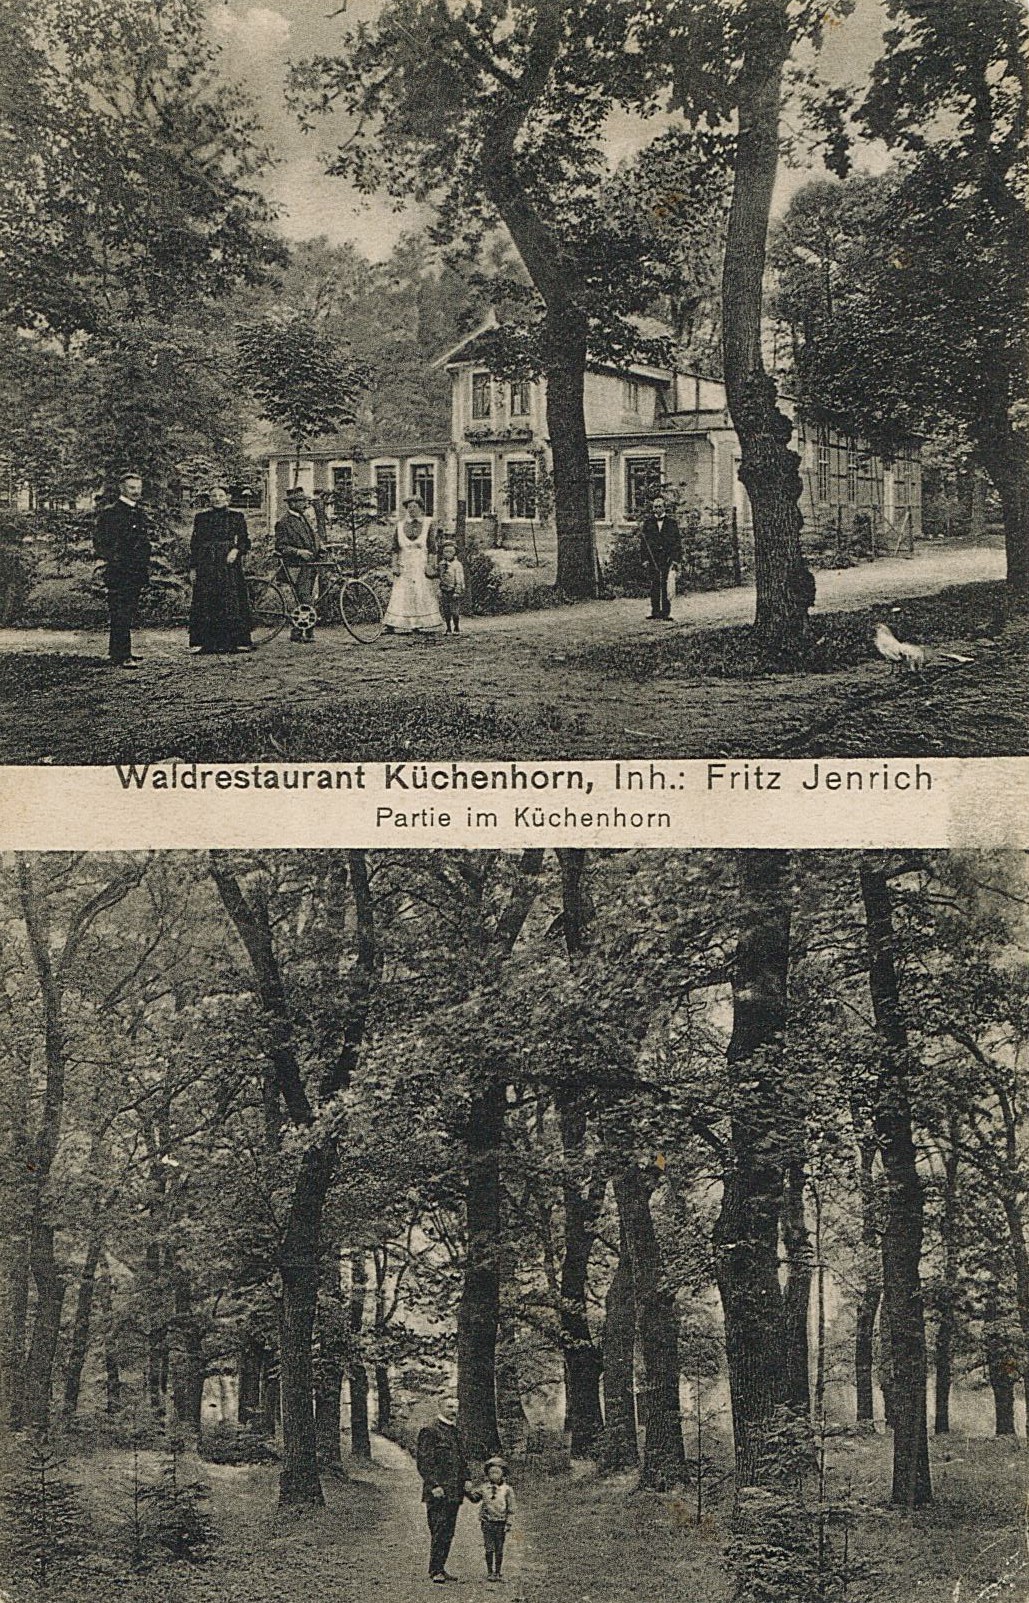 Postkarte "Waldrestaurant Küchenhorn - Partie am Küchenhorn", 14.06.1914 (Museum Wolmirstedt RR-F)